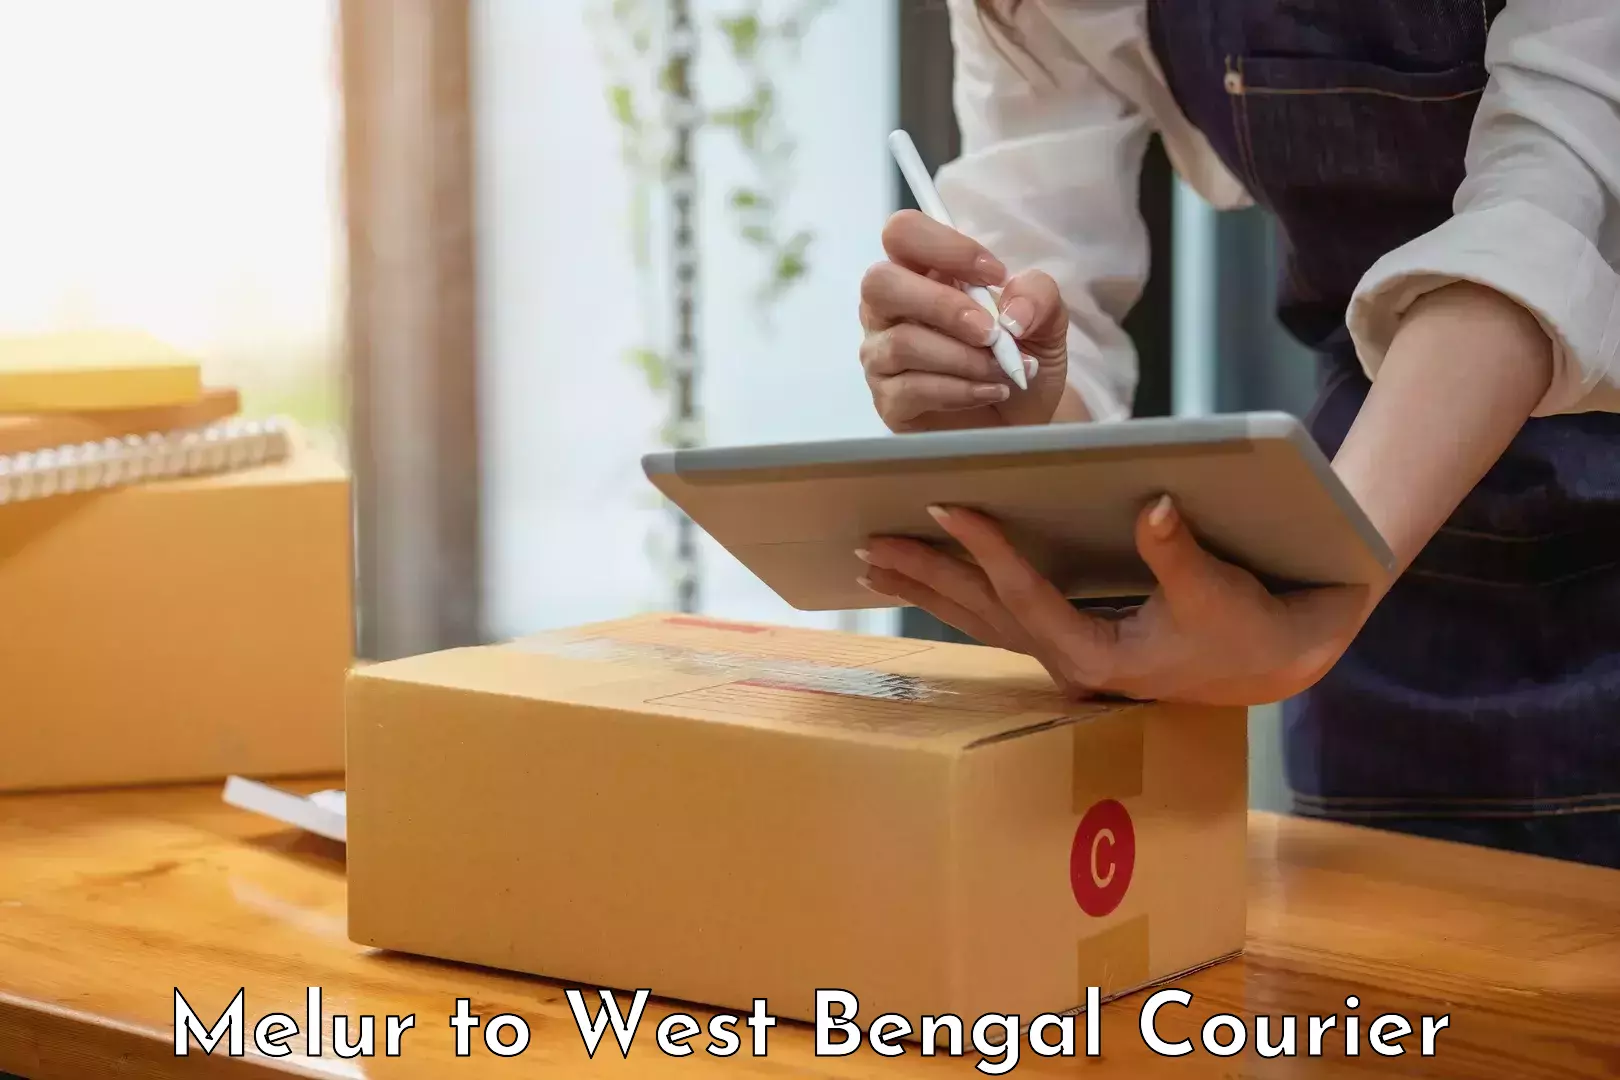 Courier service comparison Melur to West Bengal